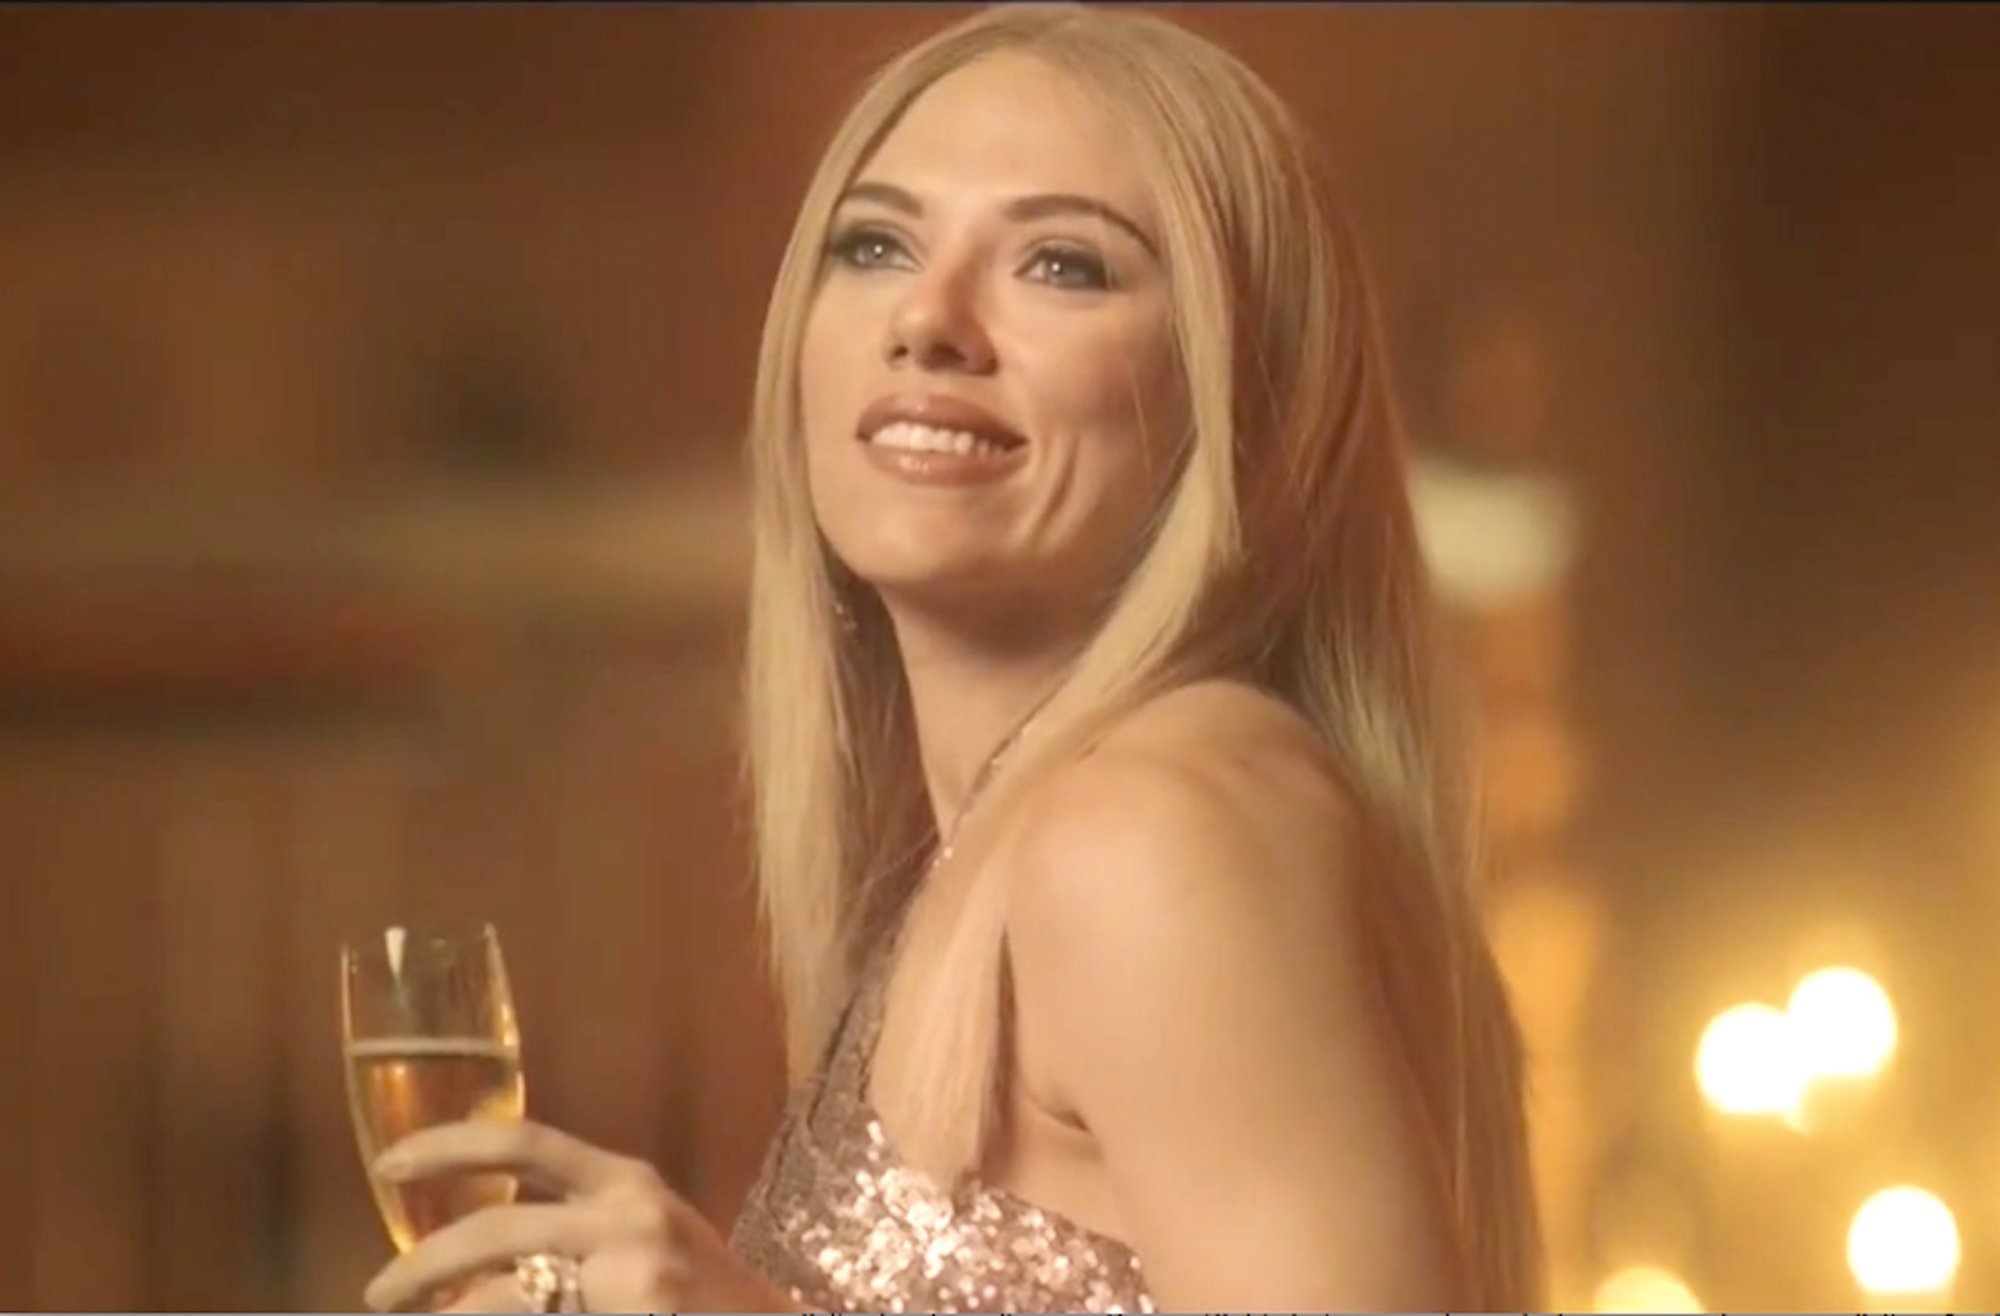 H πανέμορφη Σκάρλετ “κράζει” την Ιβάνκα σε σκετσάκι σατιρικής εκπομπής (video)